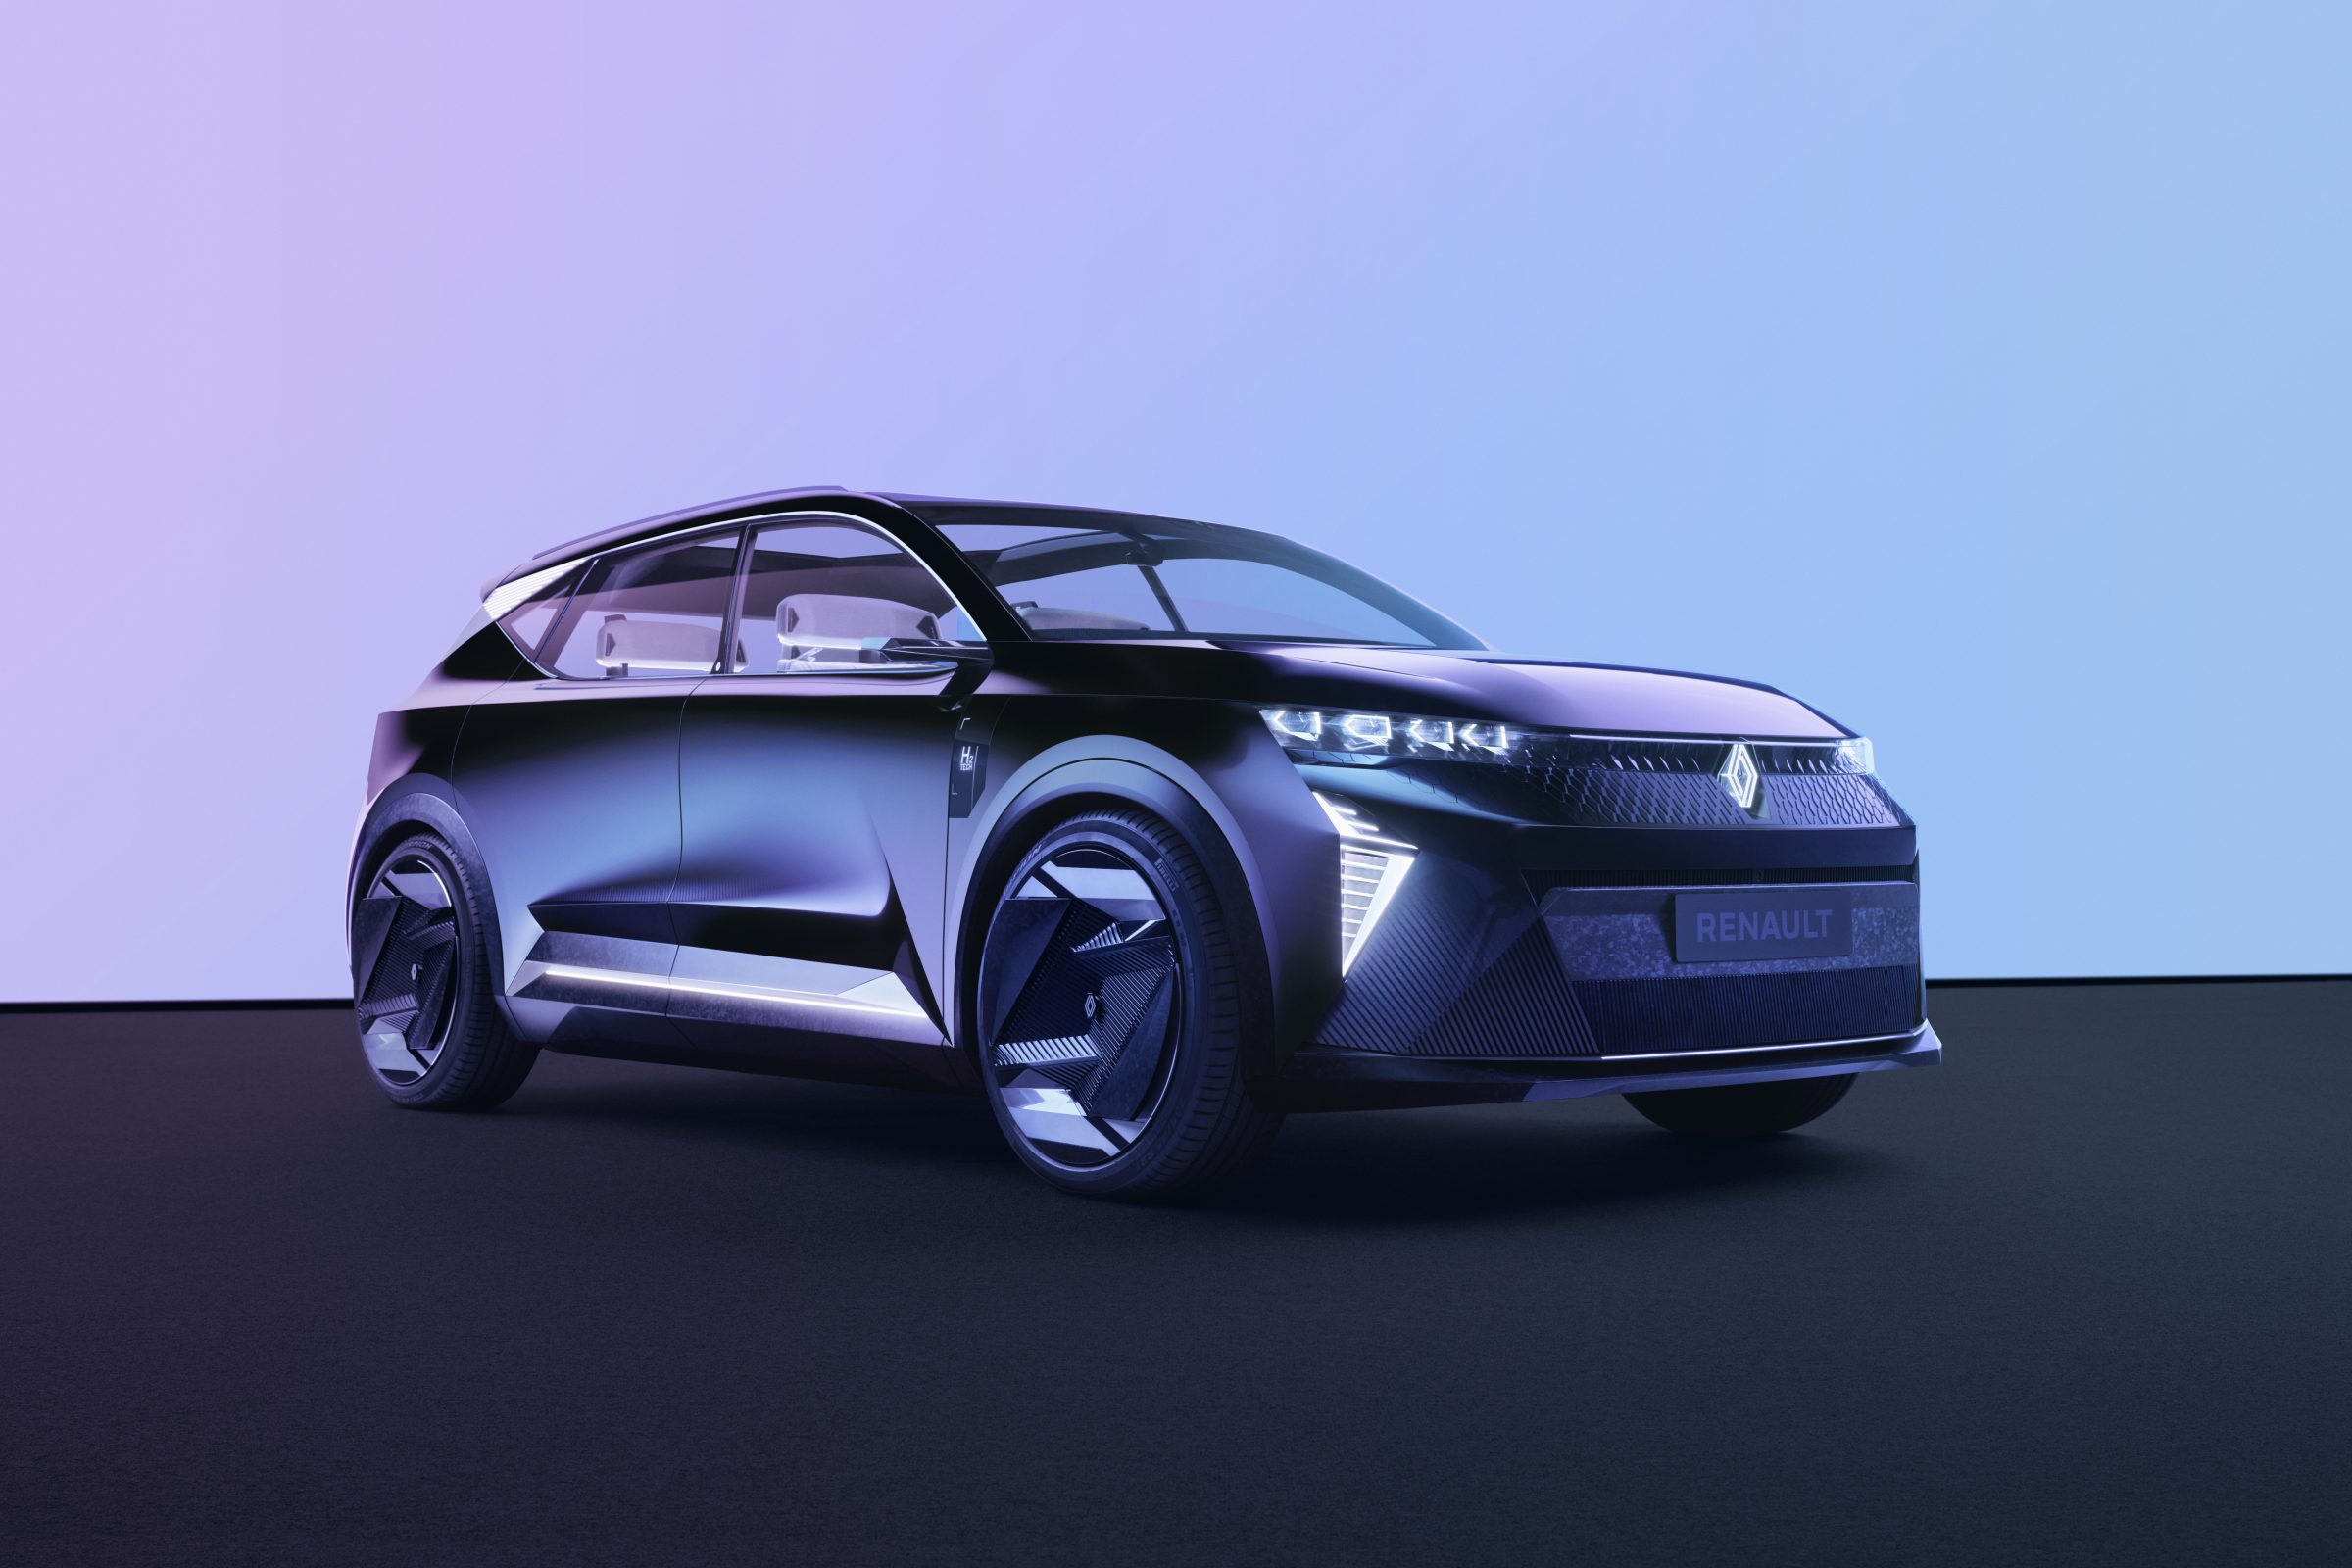 O Scénic Vision é o novo conceito da Renault que revela a visão da marca para o futuro sustentável e tecnológico